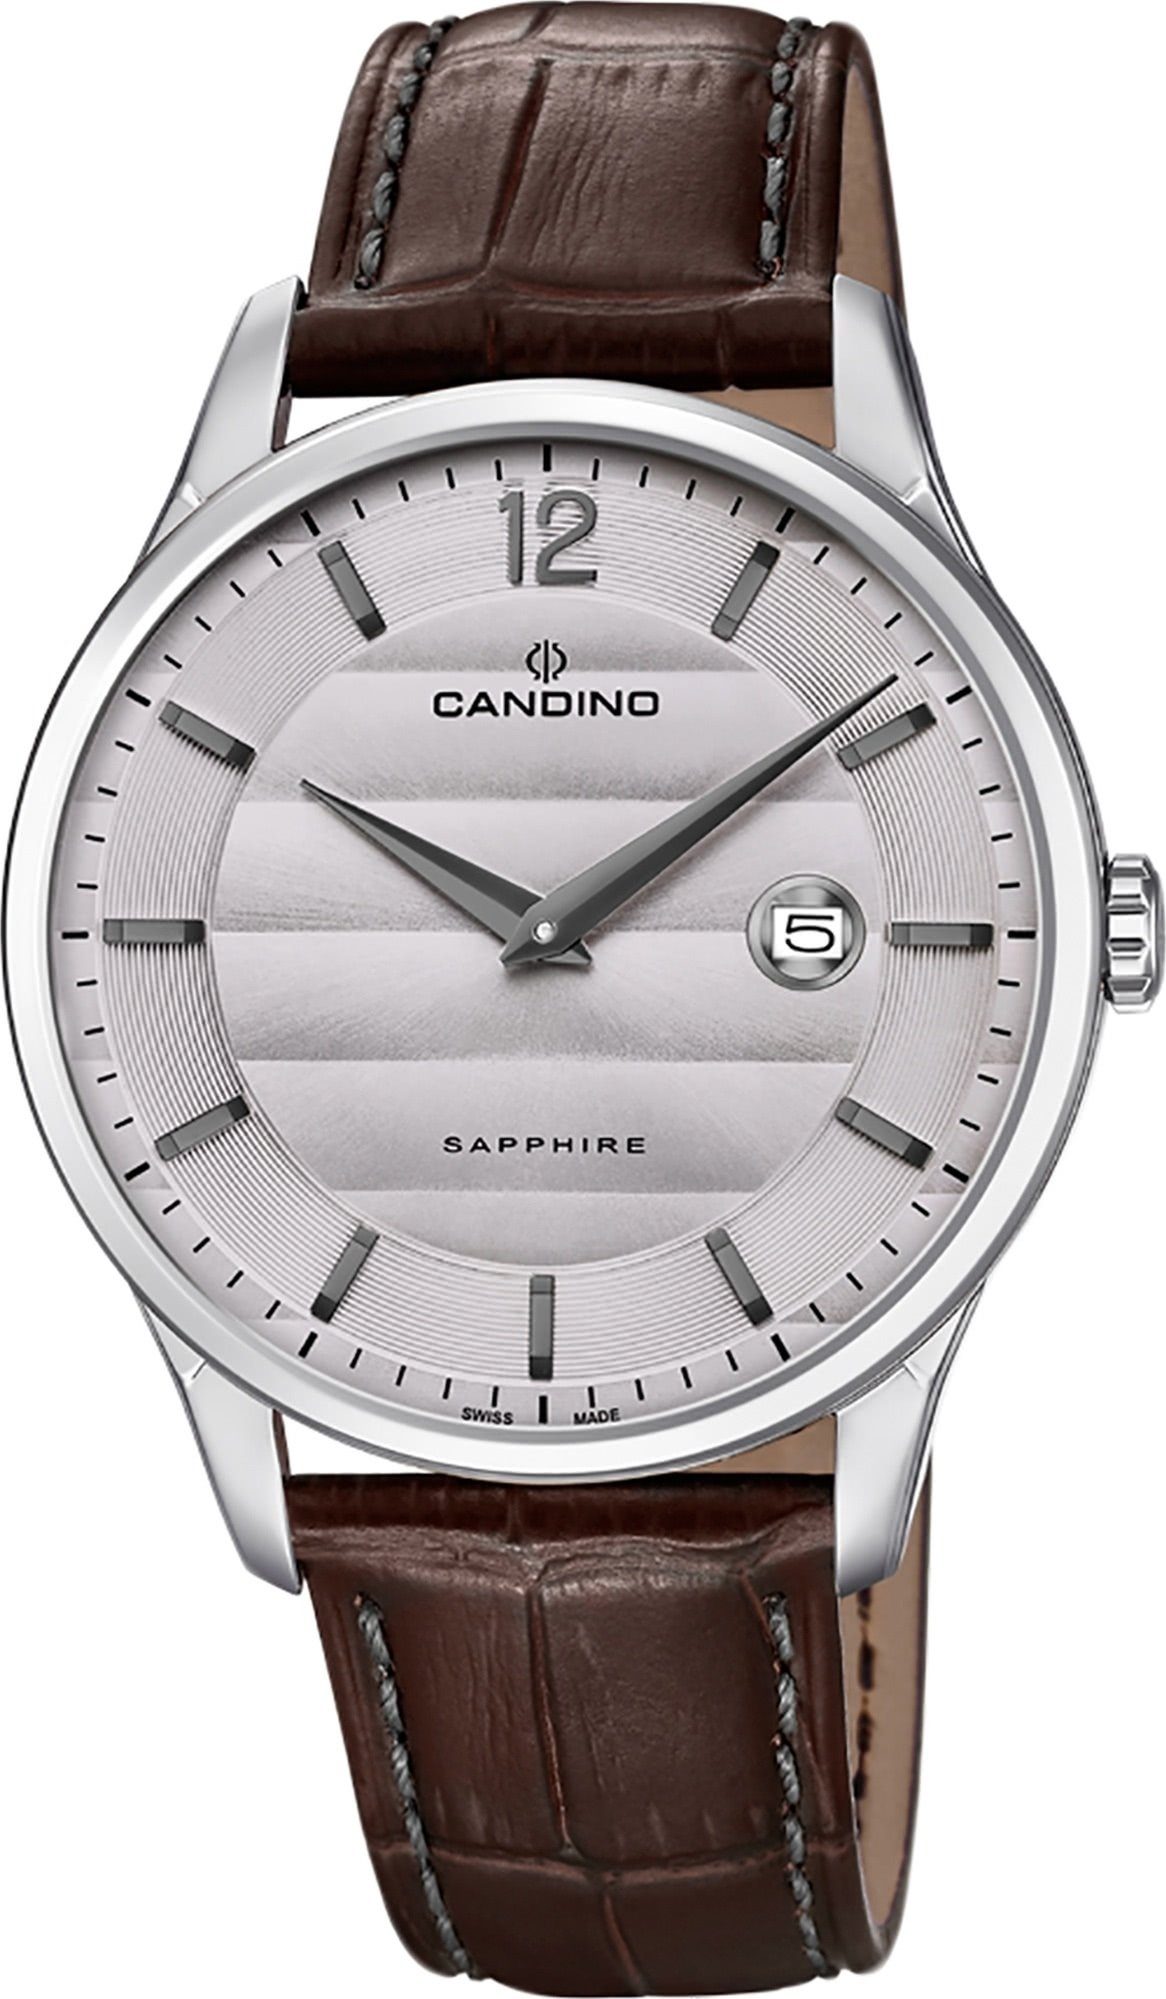 Analog braun, Herren rund, Lederarmband Candino Candino C4638/2, Quarzuhr Elegant Armbanduhr Quarzuhr Herren